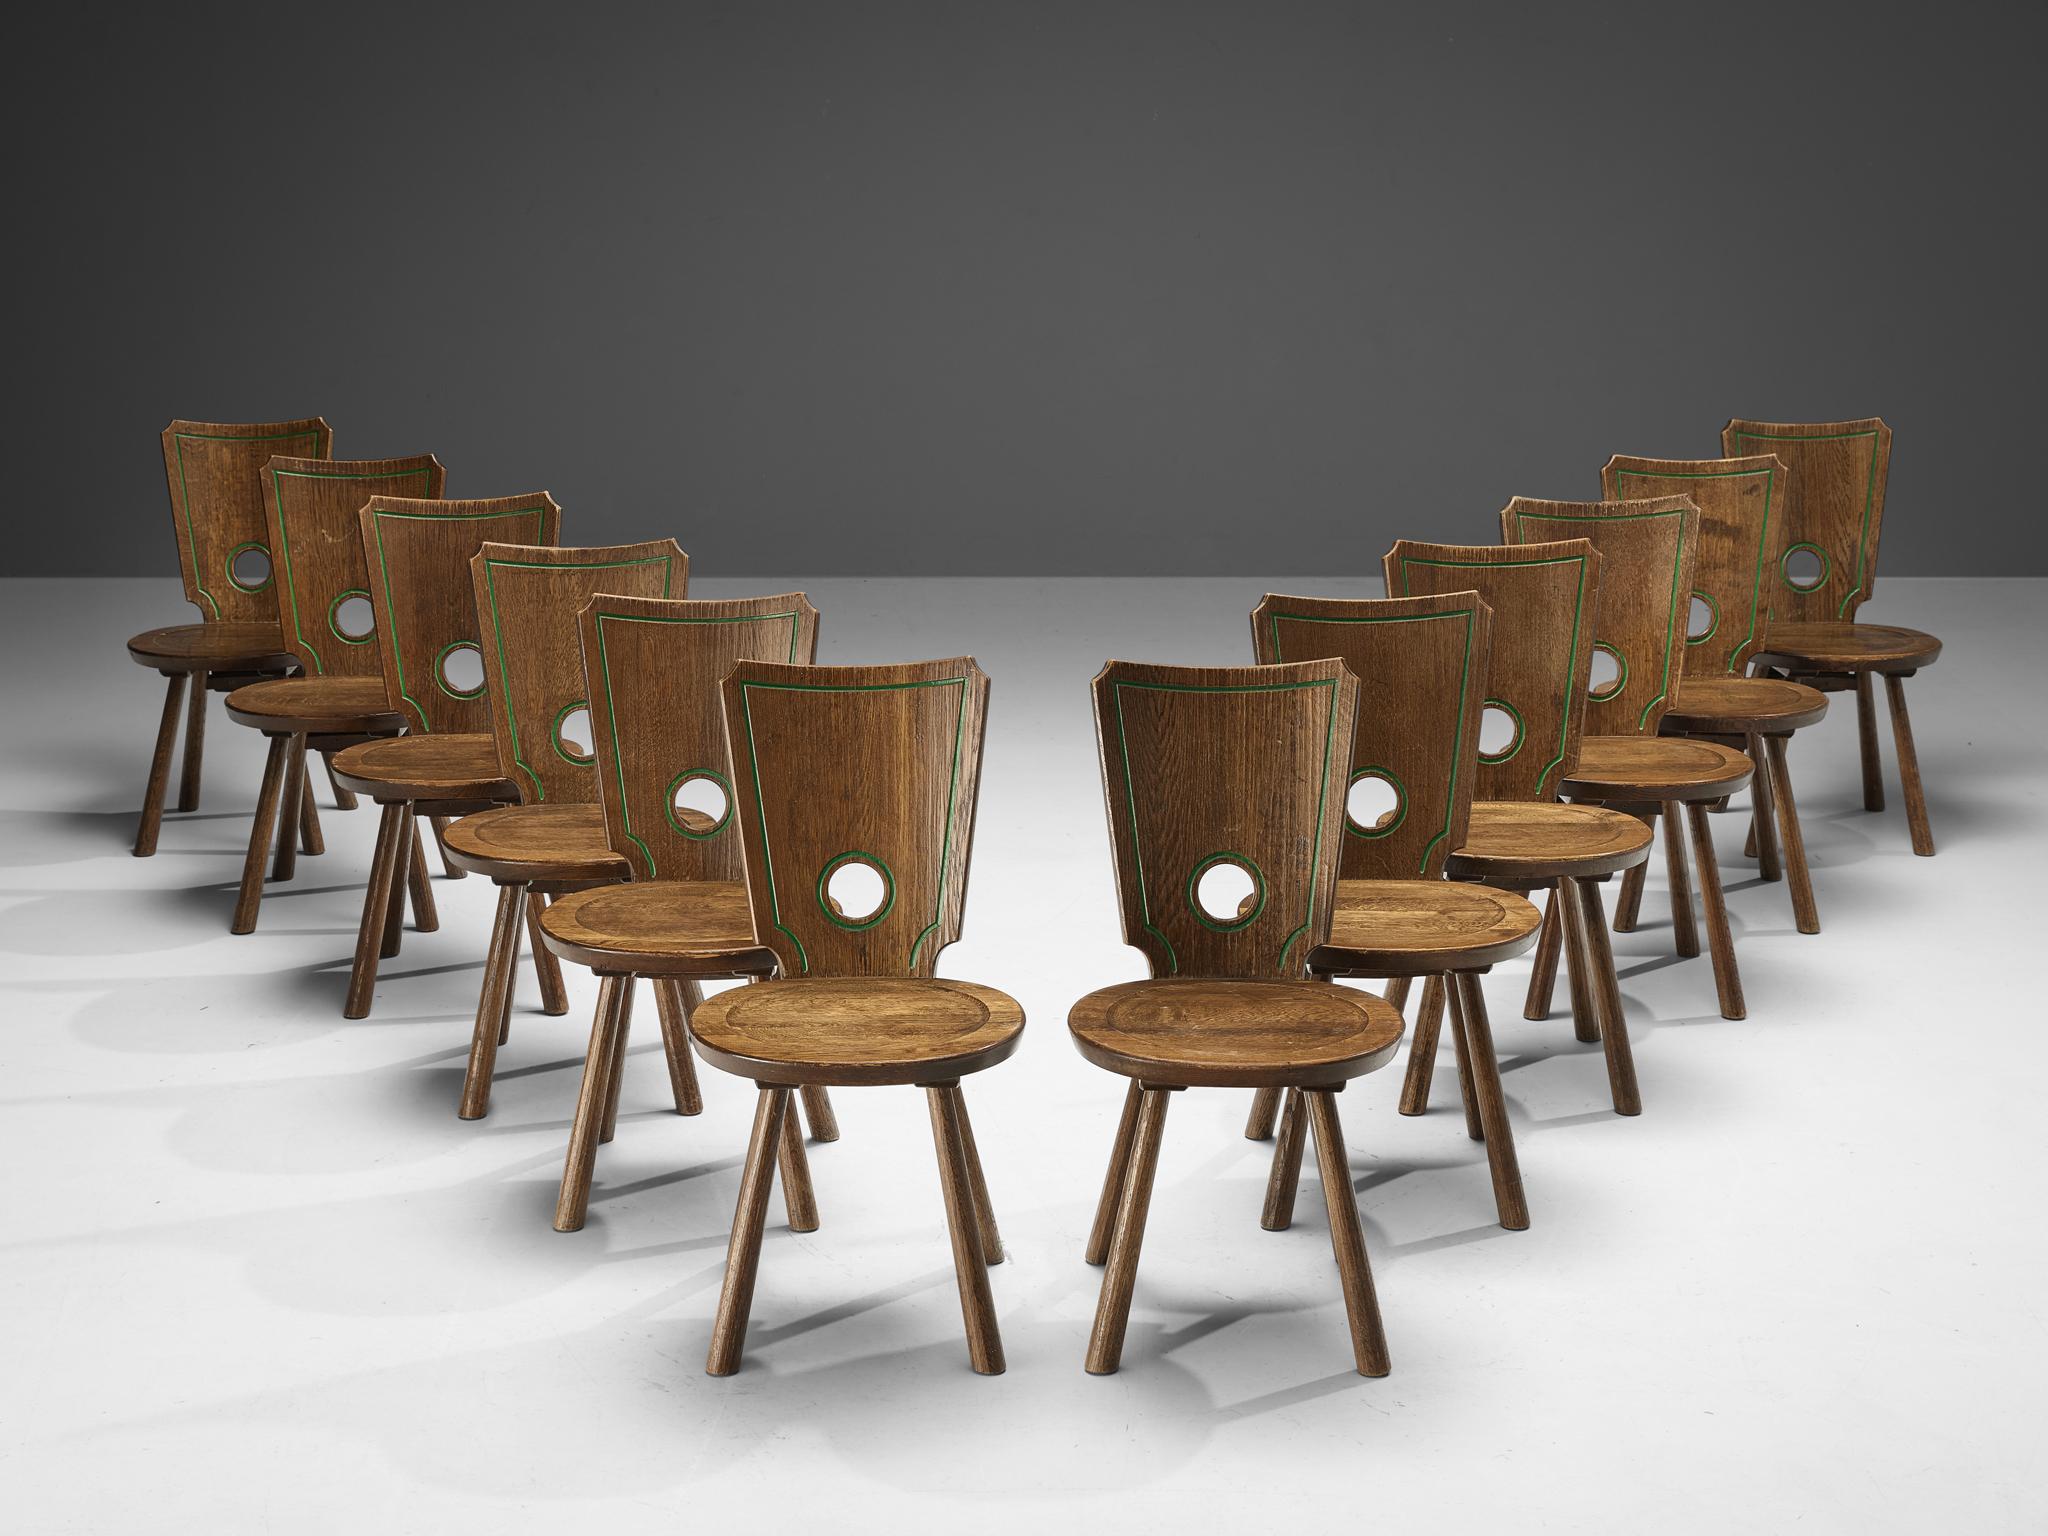 Großer Satz Esszimmerstühle, Eiche gebeizt, Messing, Metall, Frankreich, 1960er Jahre

Charakteristisches Set französischer Esszimmerstühle. Die abgerundete Aussparung in der Rückenlehne spielt eine wichtige visuelle Rolle, da sie im Kontrast zu den